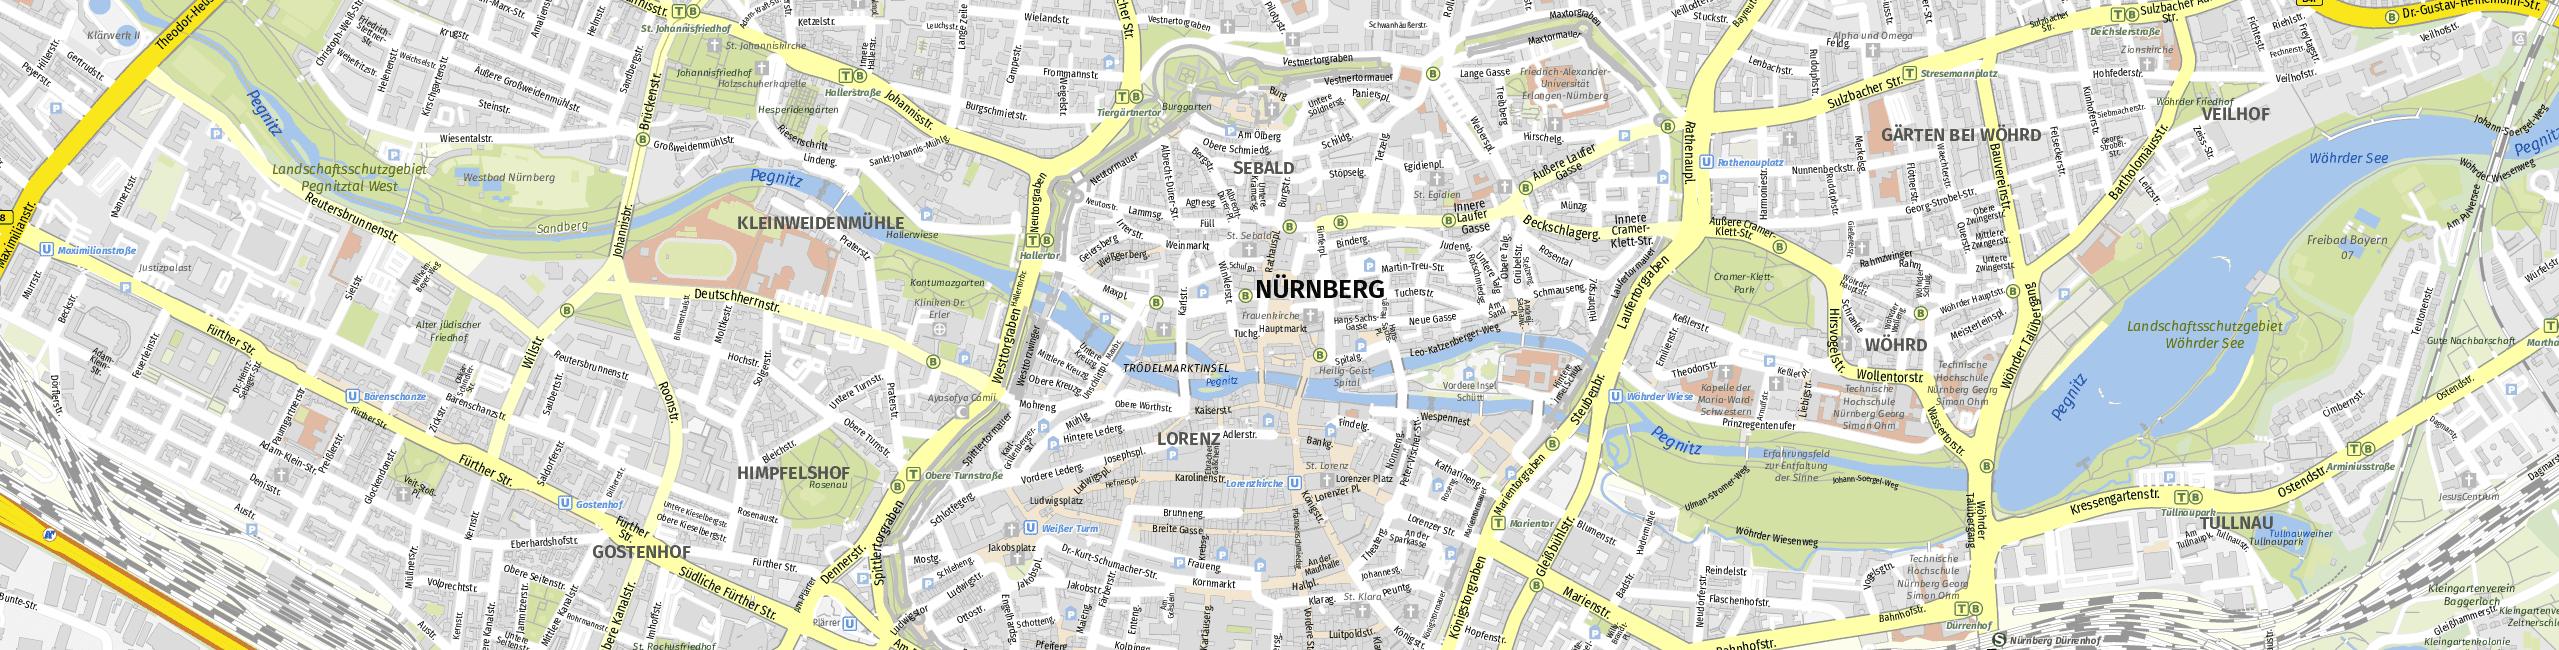 Stadtplan Nürnberg zum Downloaden.